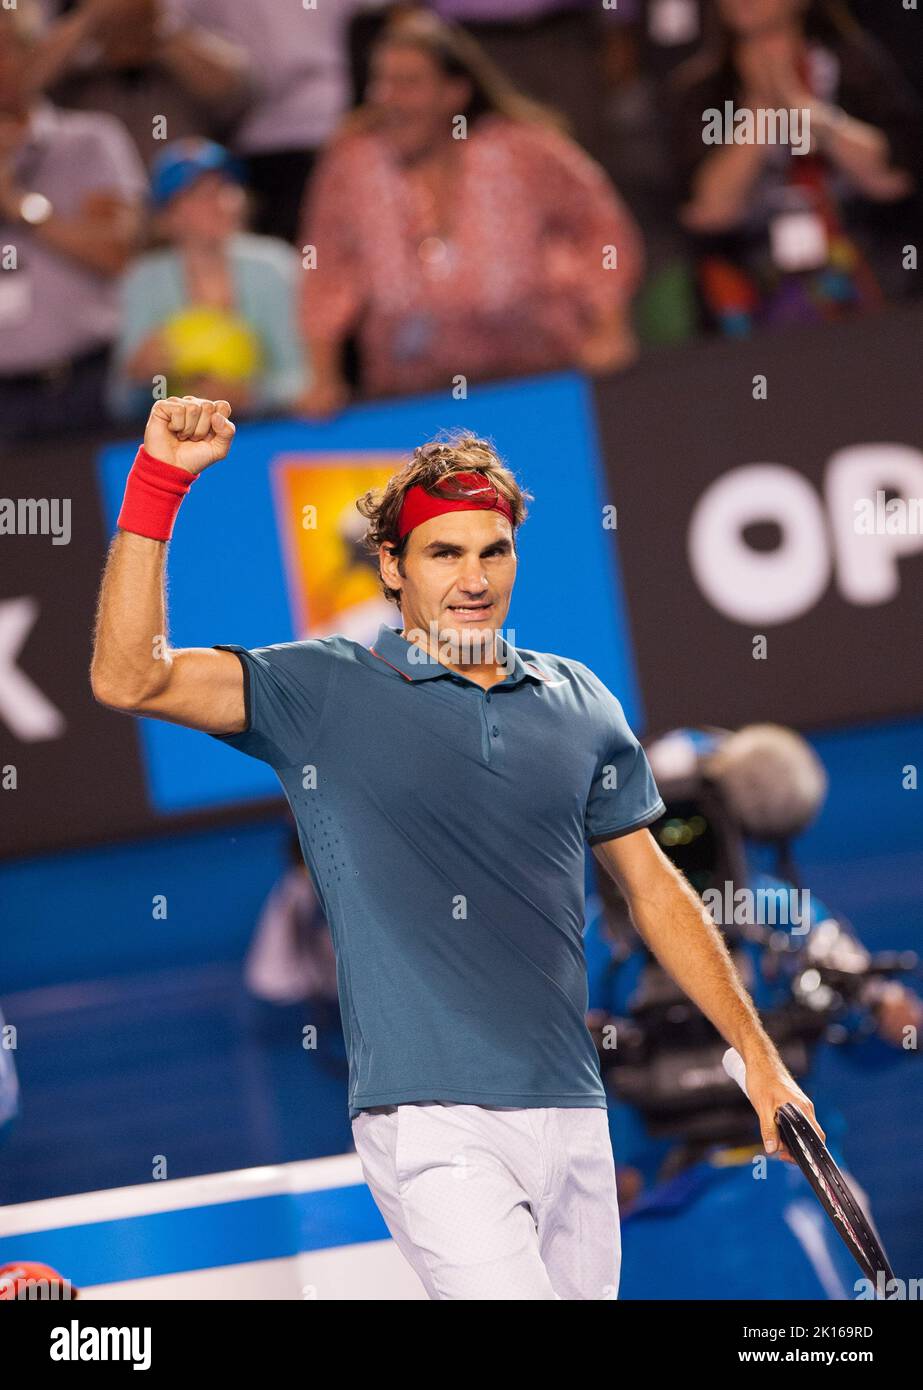 Roger Federer (SUI) se enfrentó a J.W. Tsonga (FRA) en la cuarta ronda del Abierto Australiano de Hombres Singles 2014. Presentado como un partido de rencor, Federer se trasladó fácilmente a los cuartos de final, donde se reunirá con Andy Murray GBR). Federer derrotó a Tsonga 6-3, 7-5, 6-4. Foto de stock